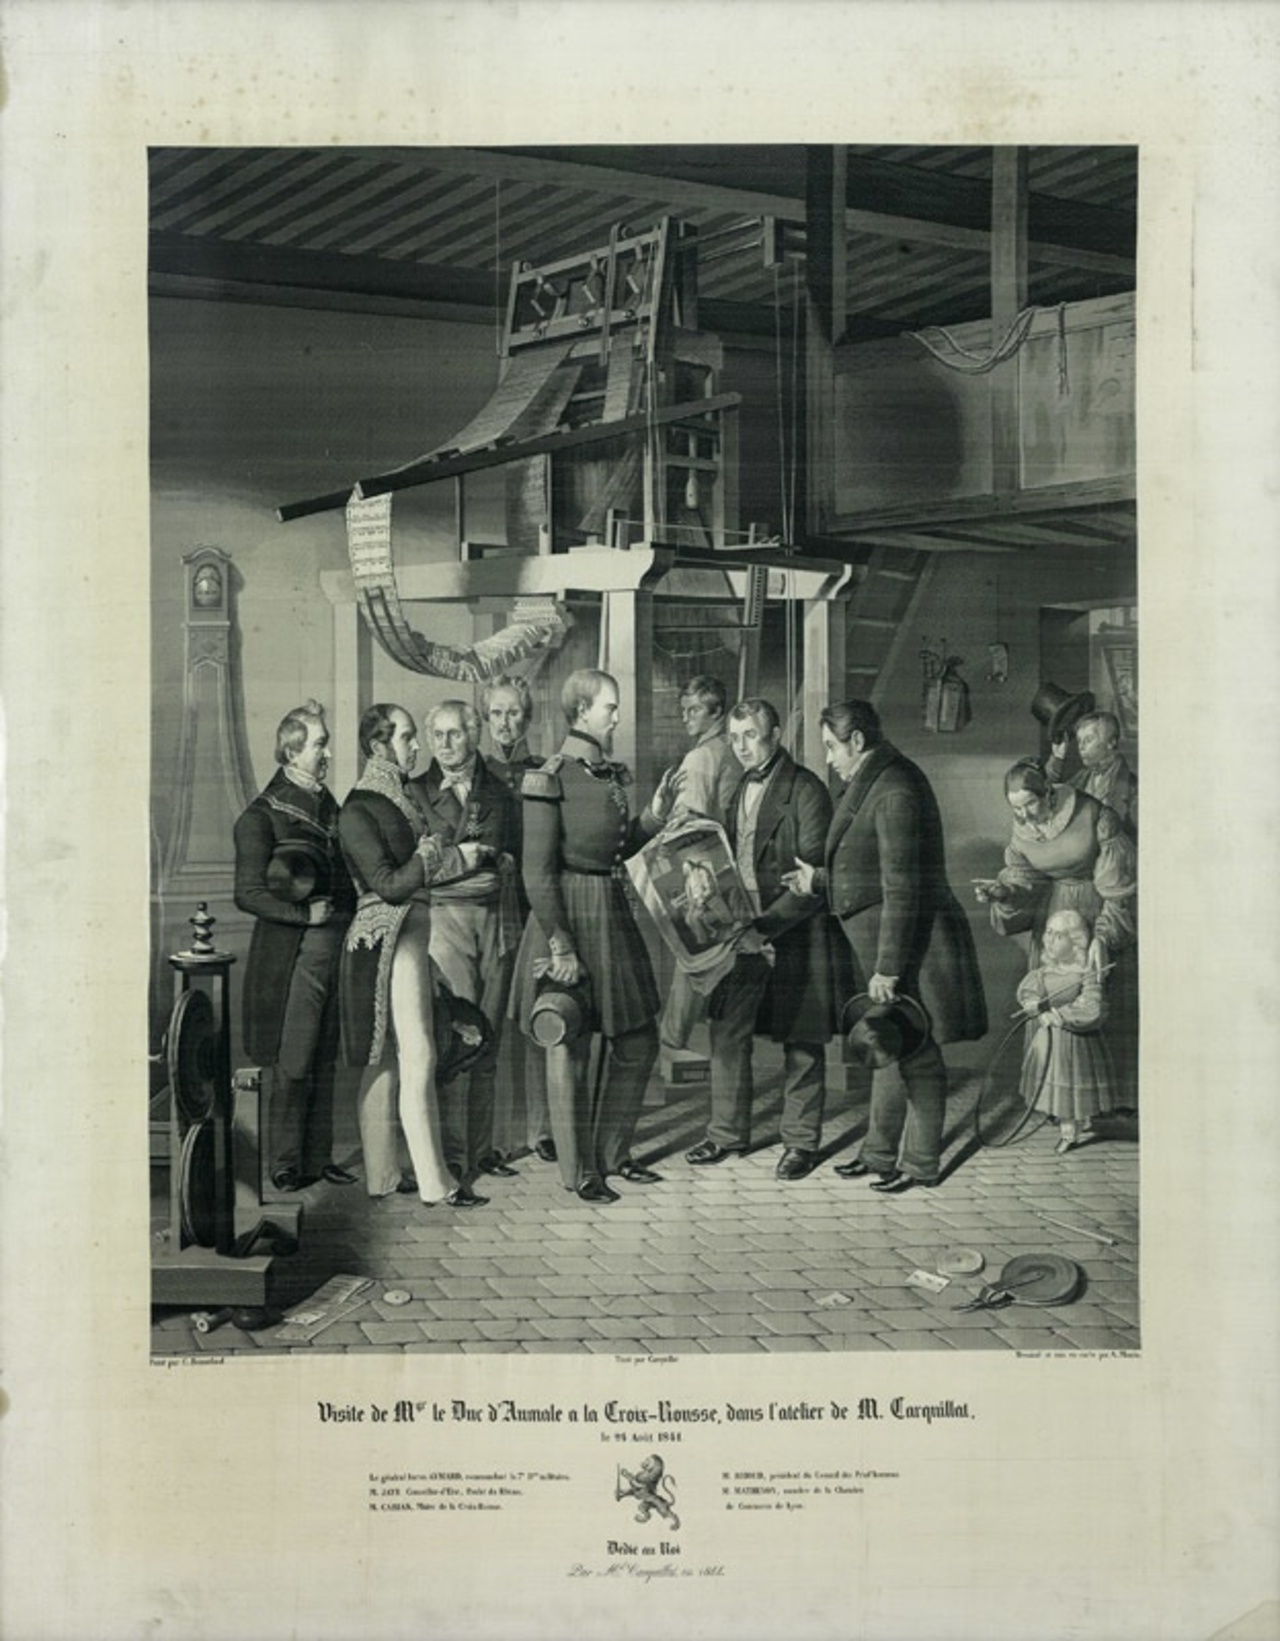 Jean-Claude Bonnefond, André Manin, Michel-Marie Carquillat, *Visite de Mgr le Duc d'Aumale à la Croix-Rousse, dans l'atelier de M. Carquillat*, Lyon, 1844.